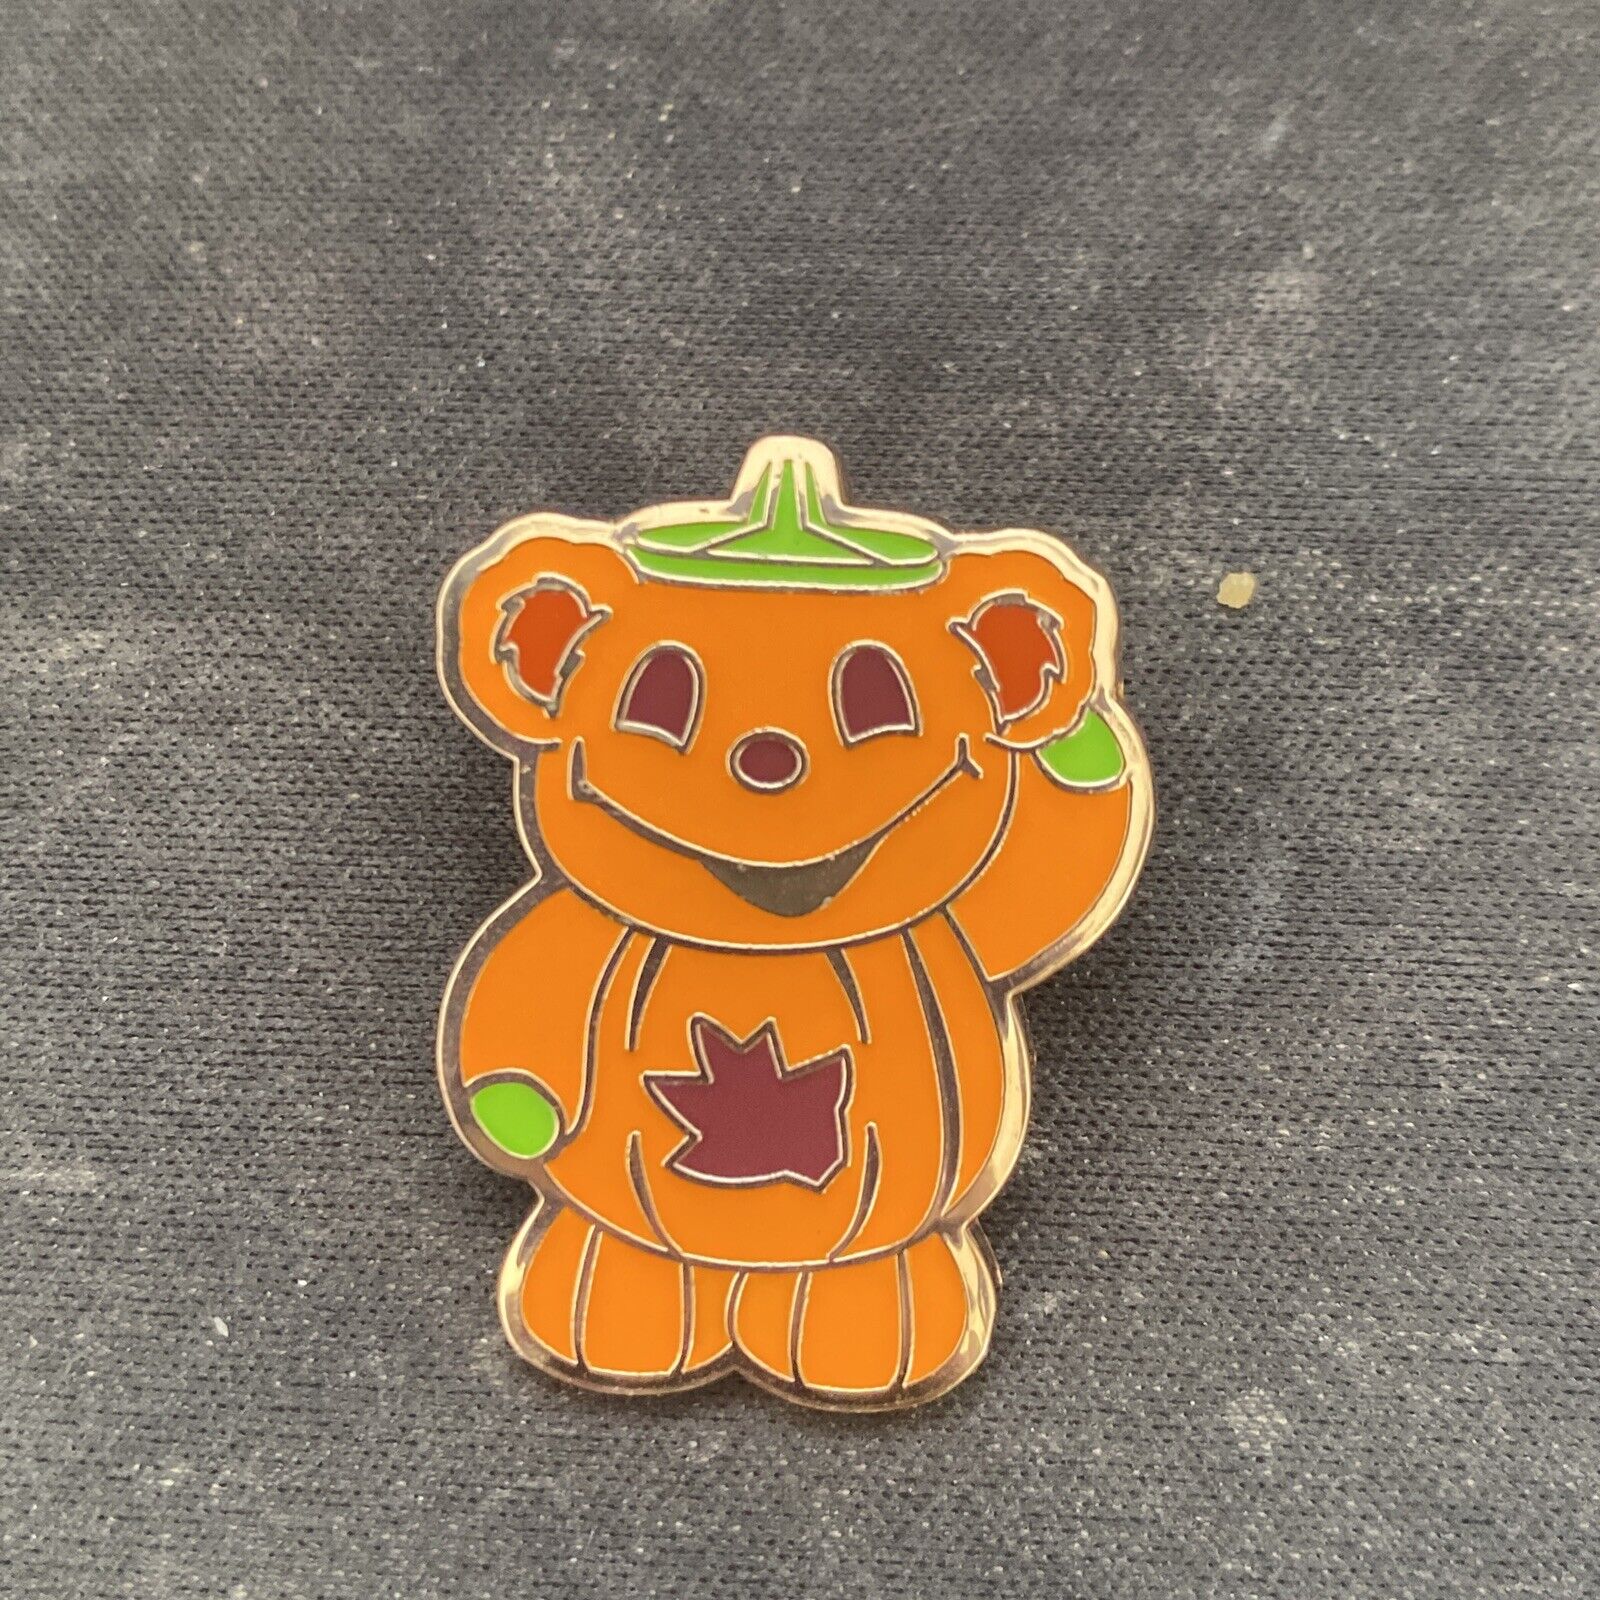 HKDL 2020 Halloween Mystery Pumpkin Duffy Bear Hong Kong Disney Pin